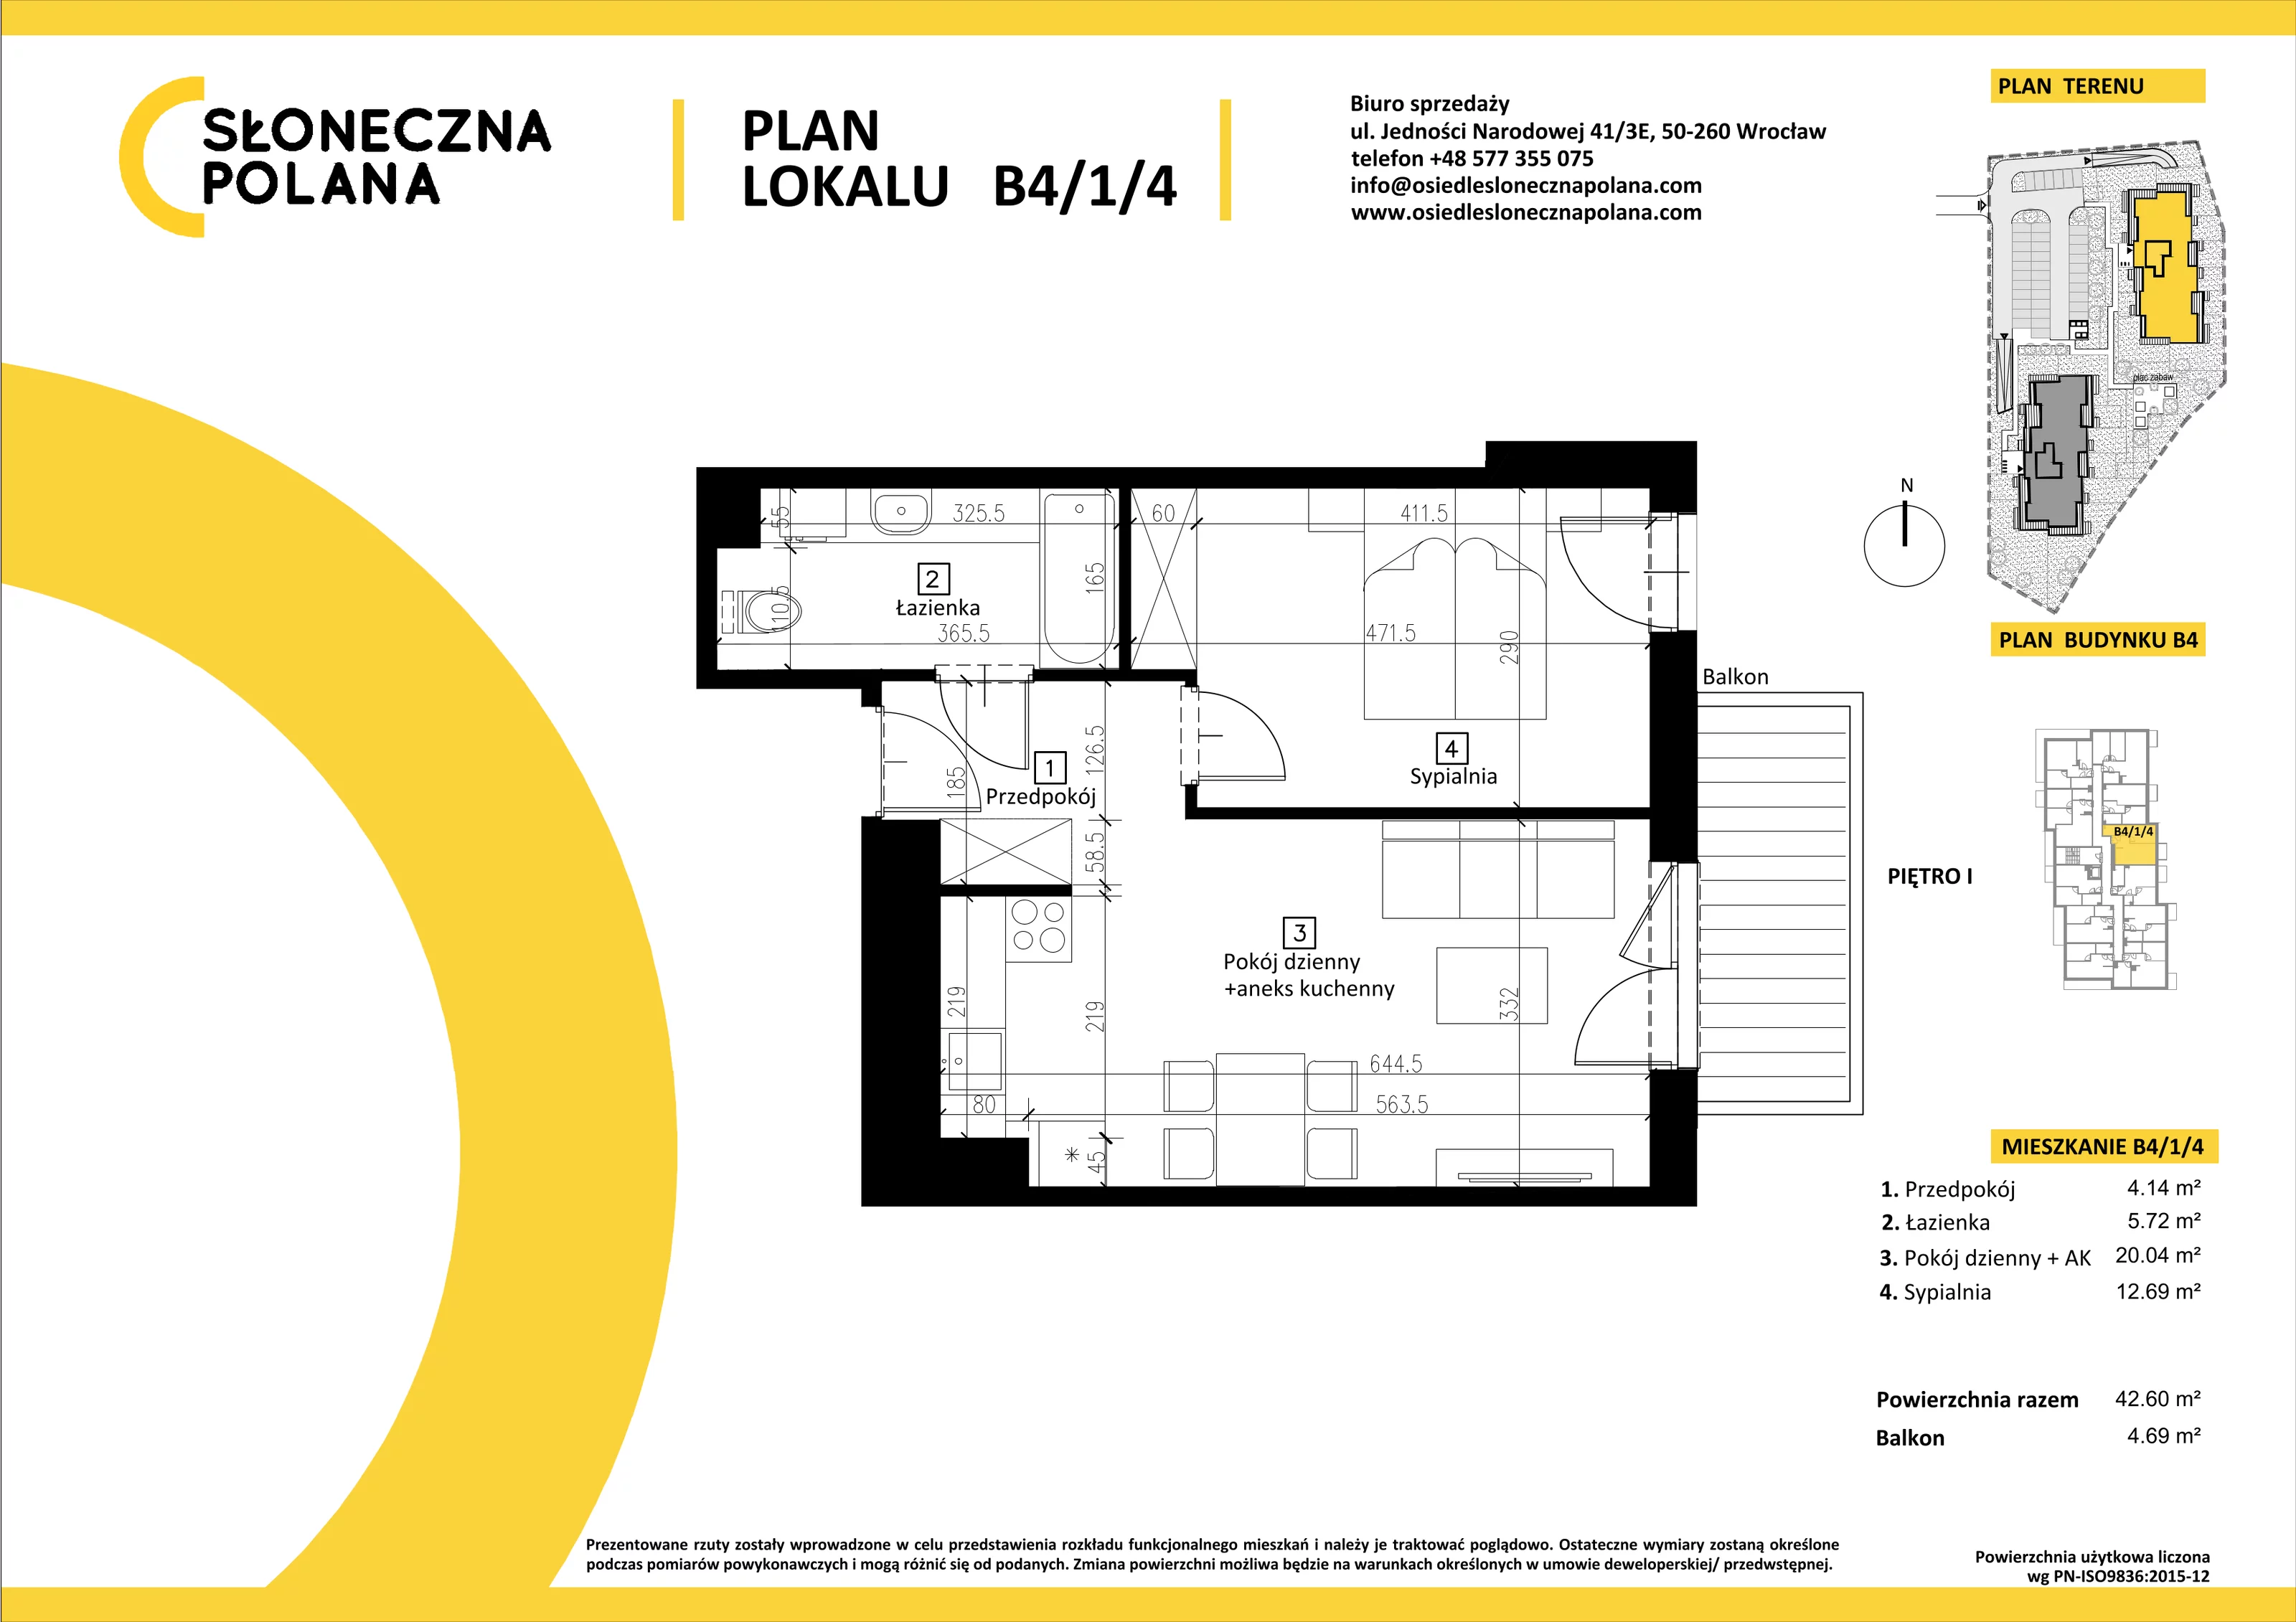 Mieszkanie 42,60 m², piętro 1, oferta nr B4/1/4, Słoneczna Polana, Kudowa-Zdrój, ul. Bluszczowa